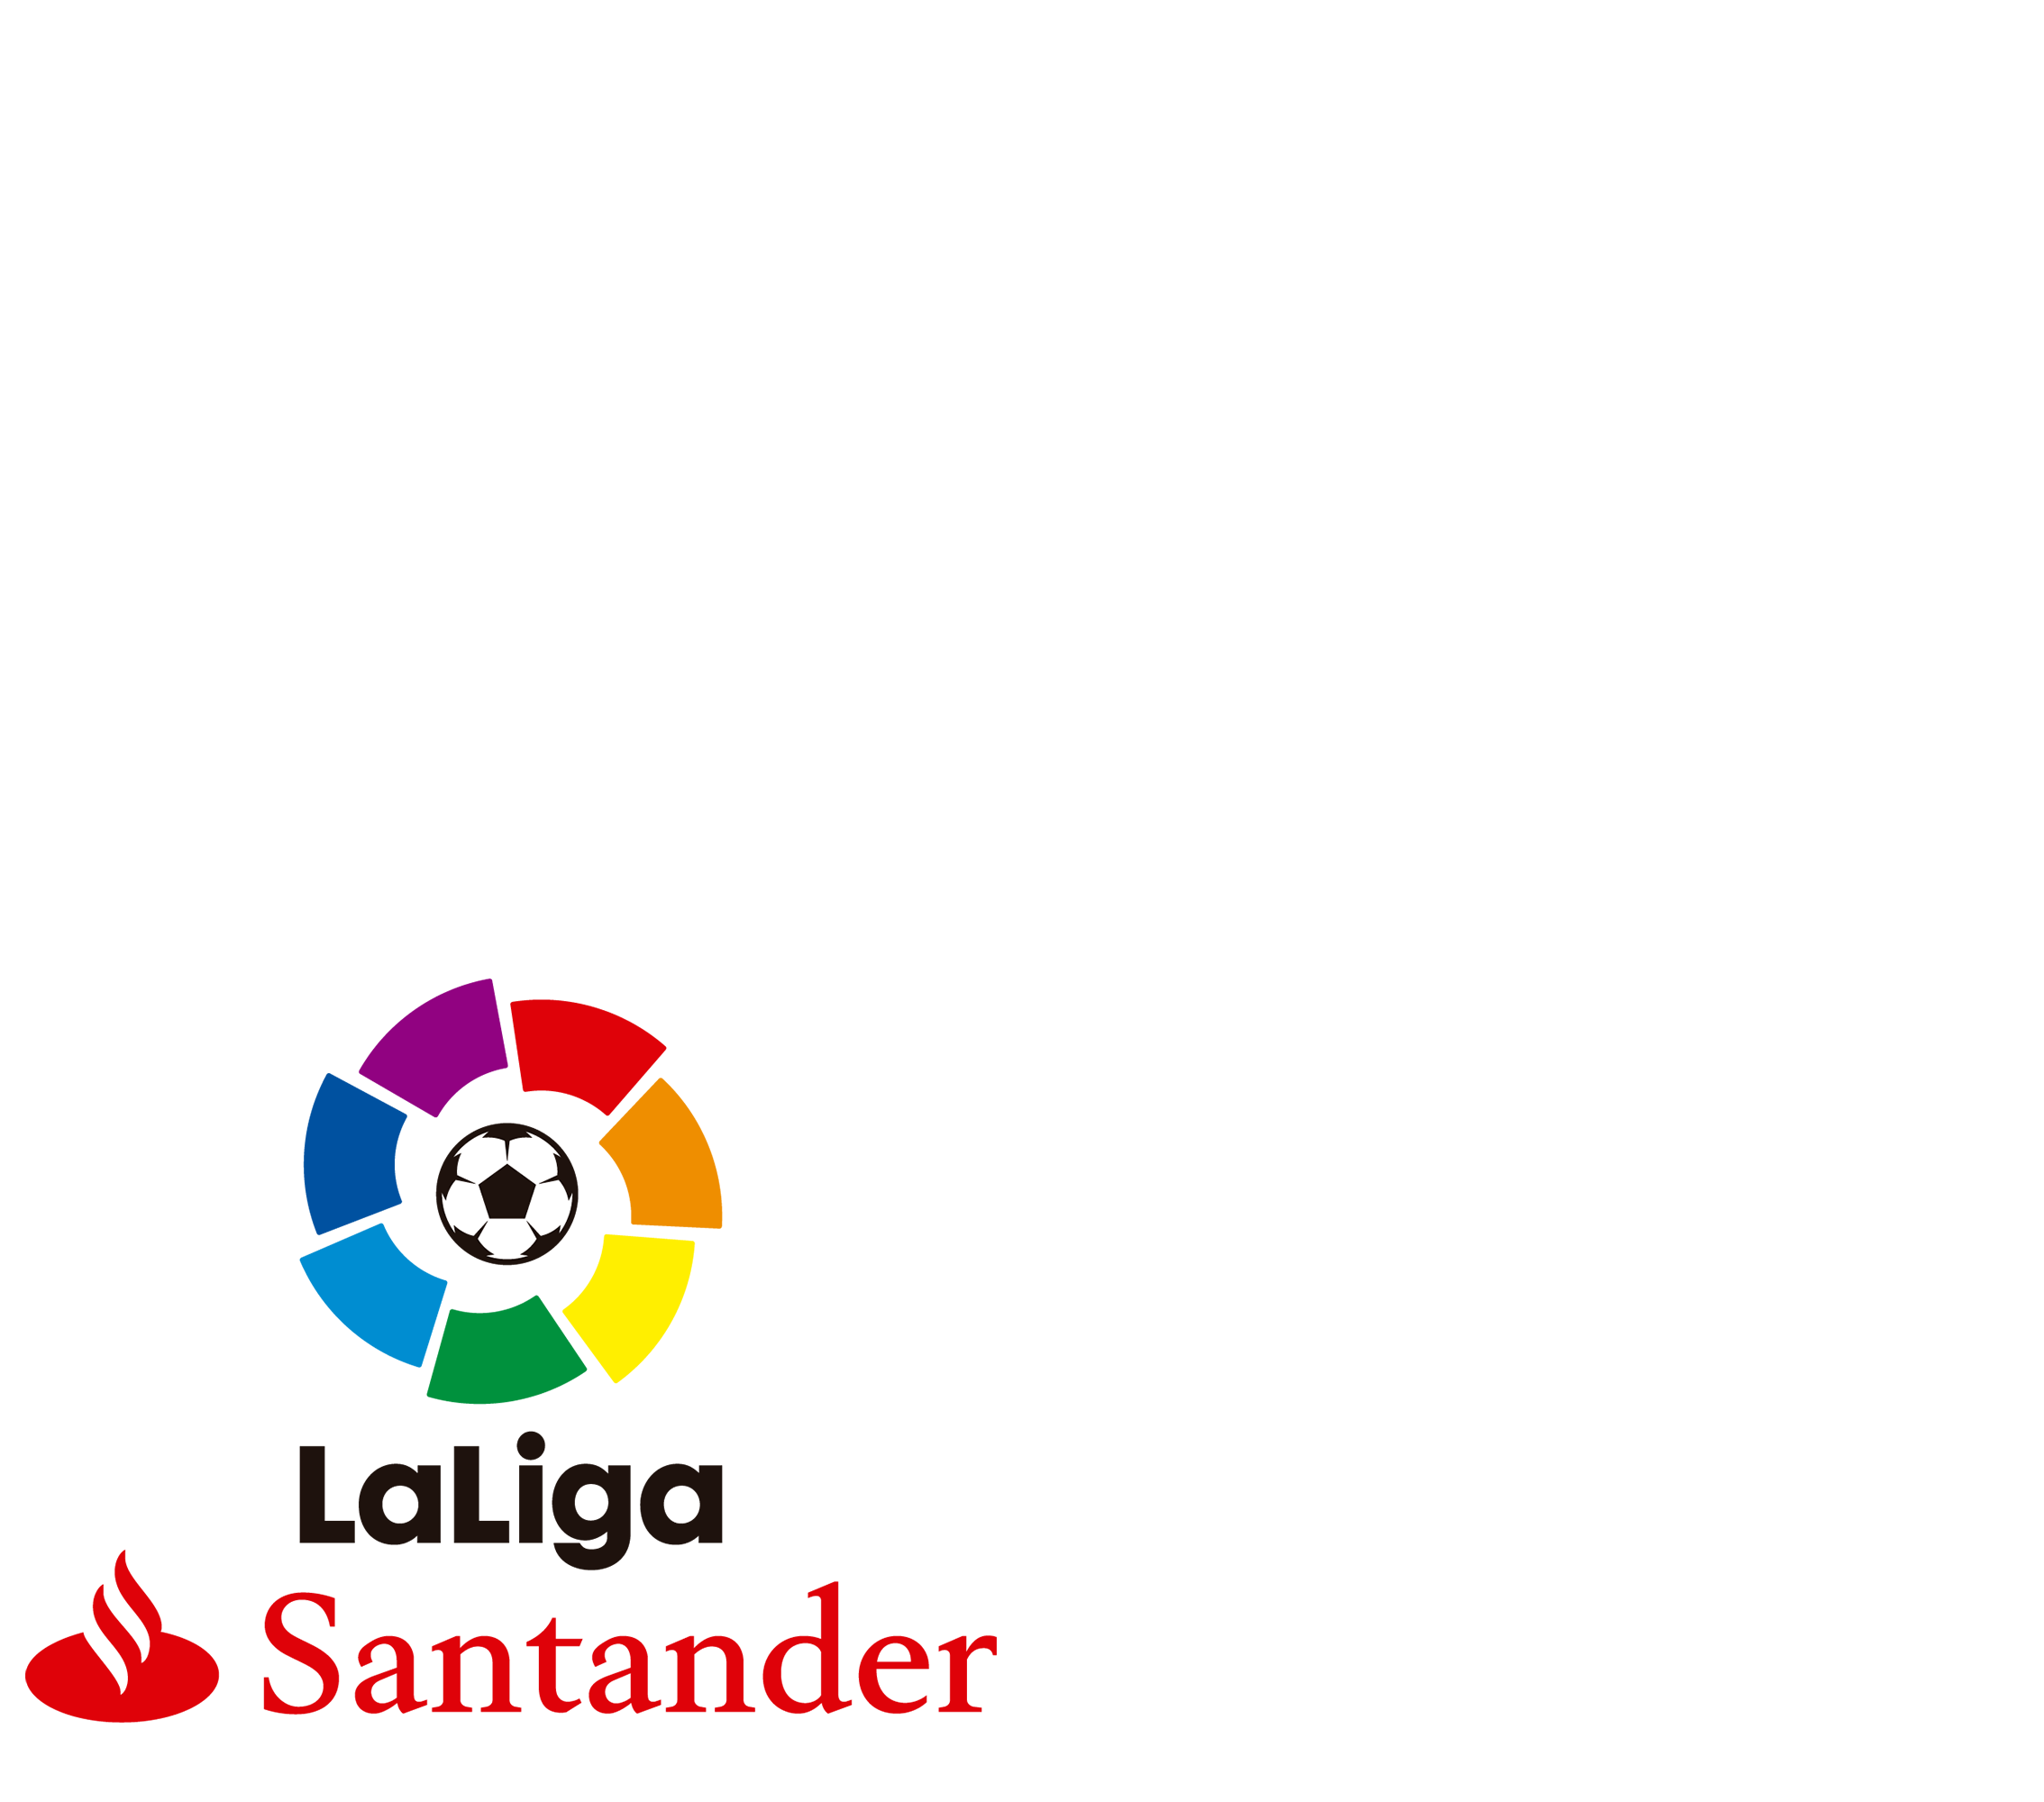 LaLliga Santander 2016/17